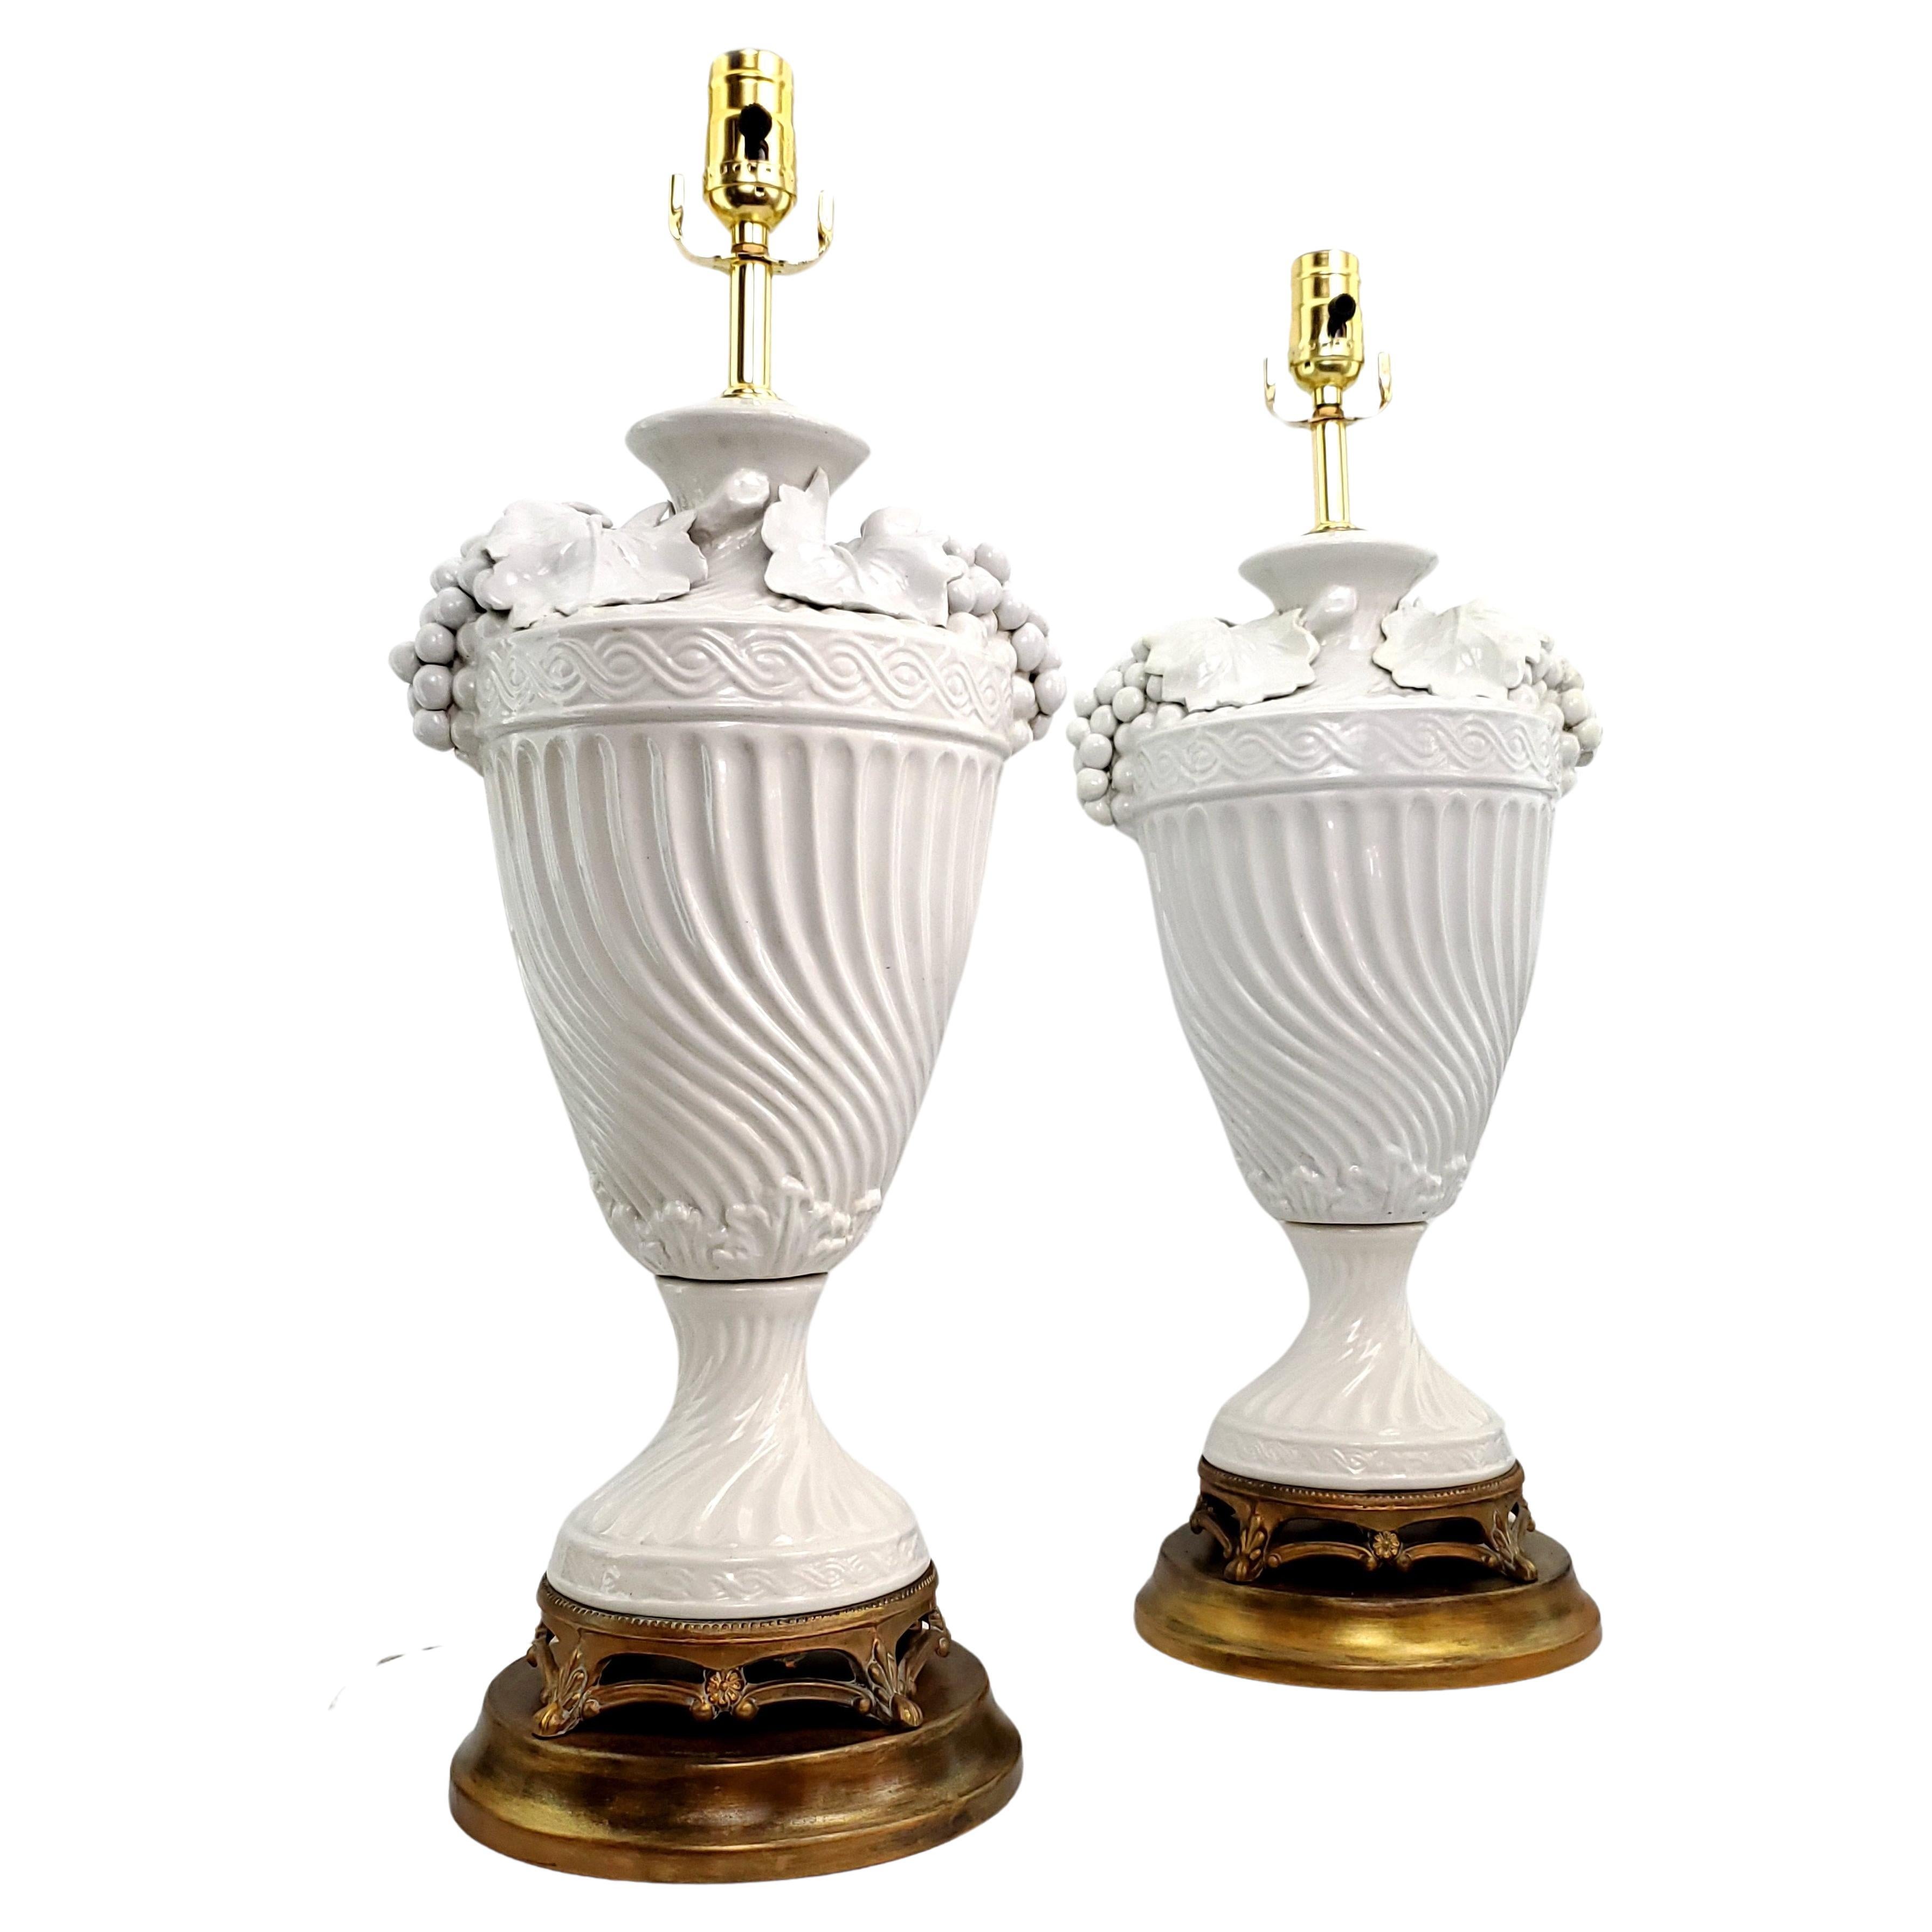 Zwei italienische Tischlampen aus weißem Blanc de Chine-Porzellan, um 1950. Diese beiden großen Lampen wurden zerlegt, gereinigt und professionell restauriert.  Die Metallsockel sind original und wurden mit einer goldenen Metallglasur aufgefrischt.